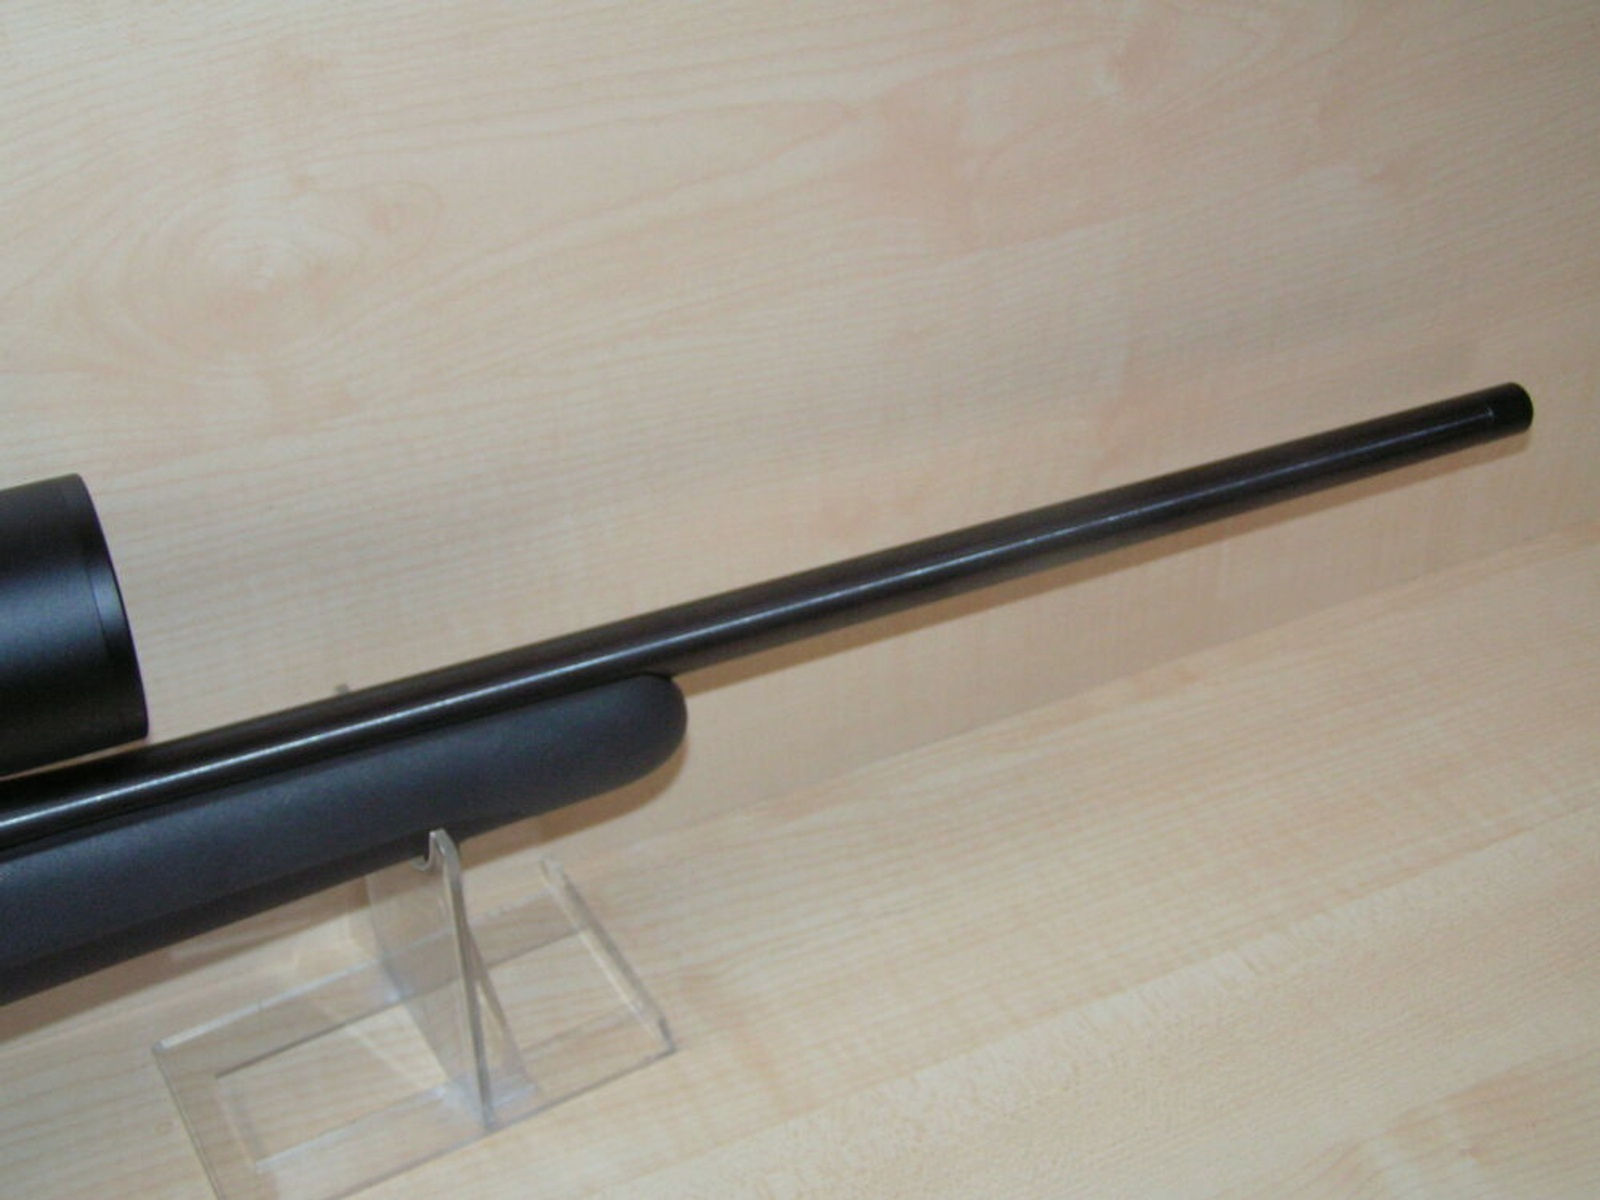 Mauser	 M 18